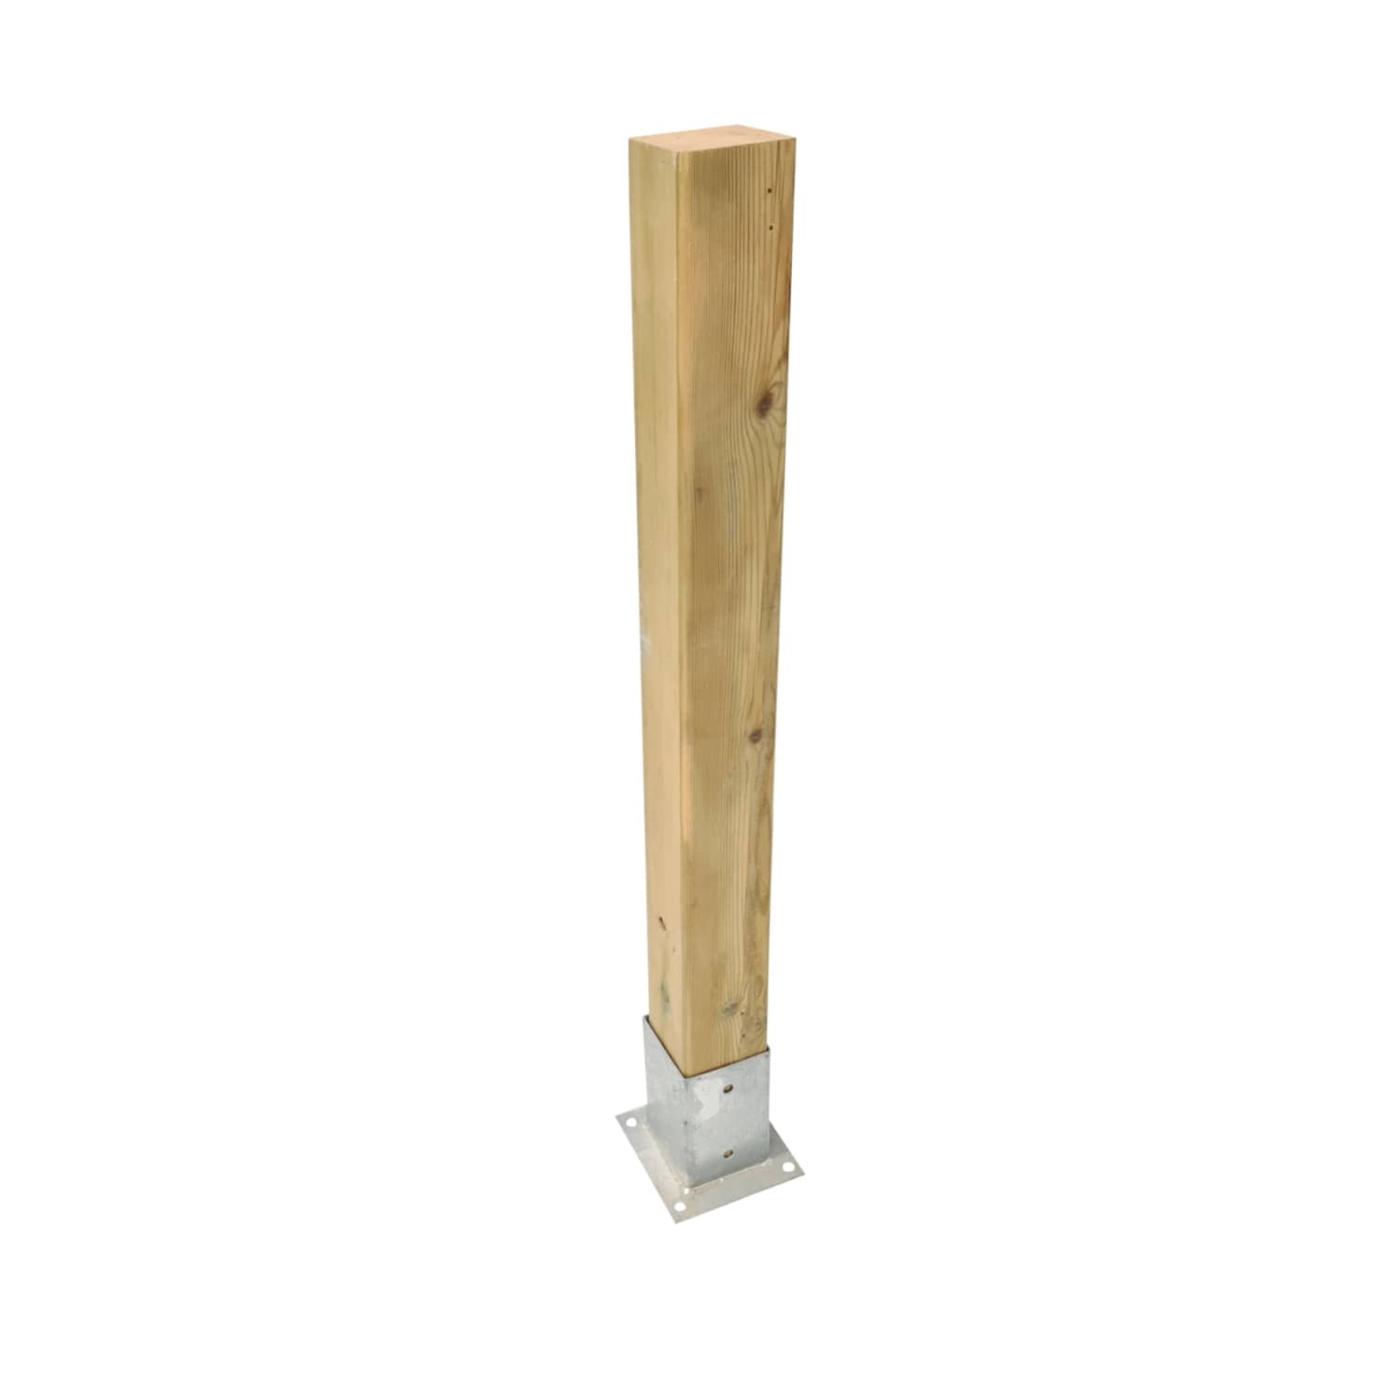 Pilar de madeira 88x88mm para vedações exteriores aprovadas MASGAMES